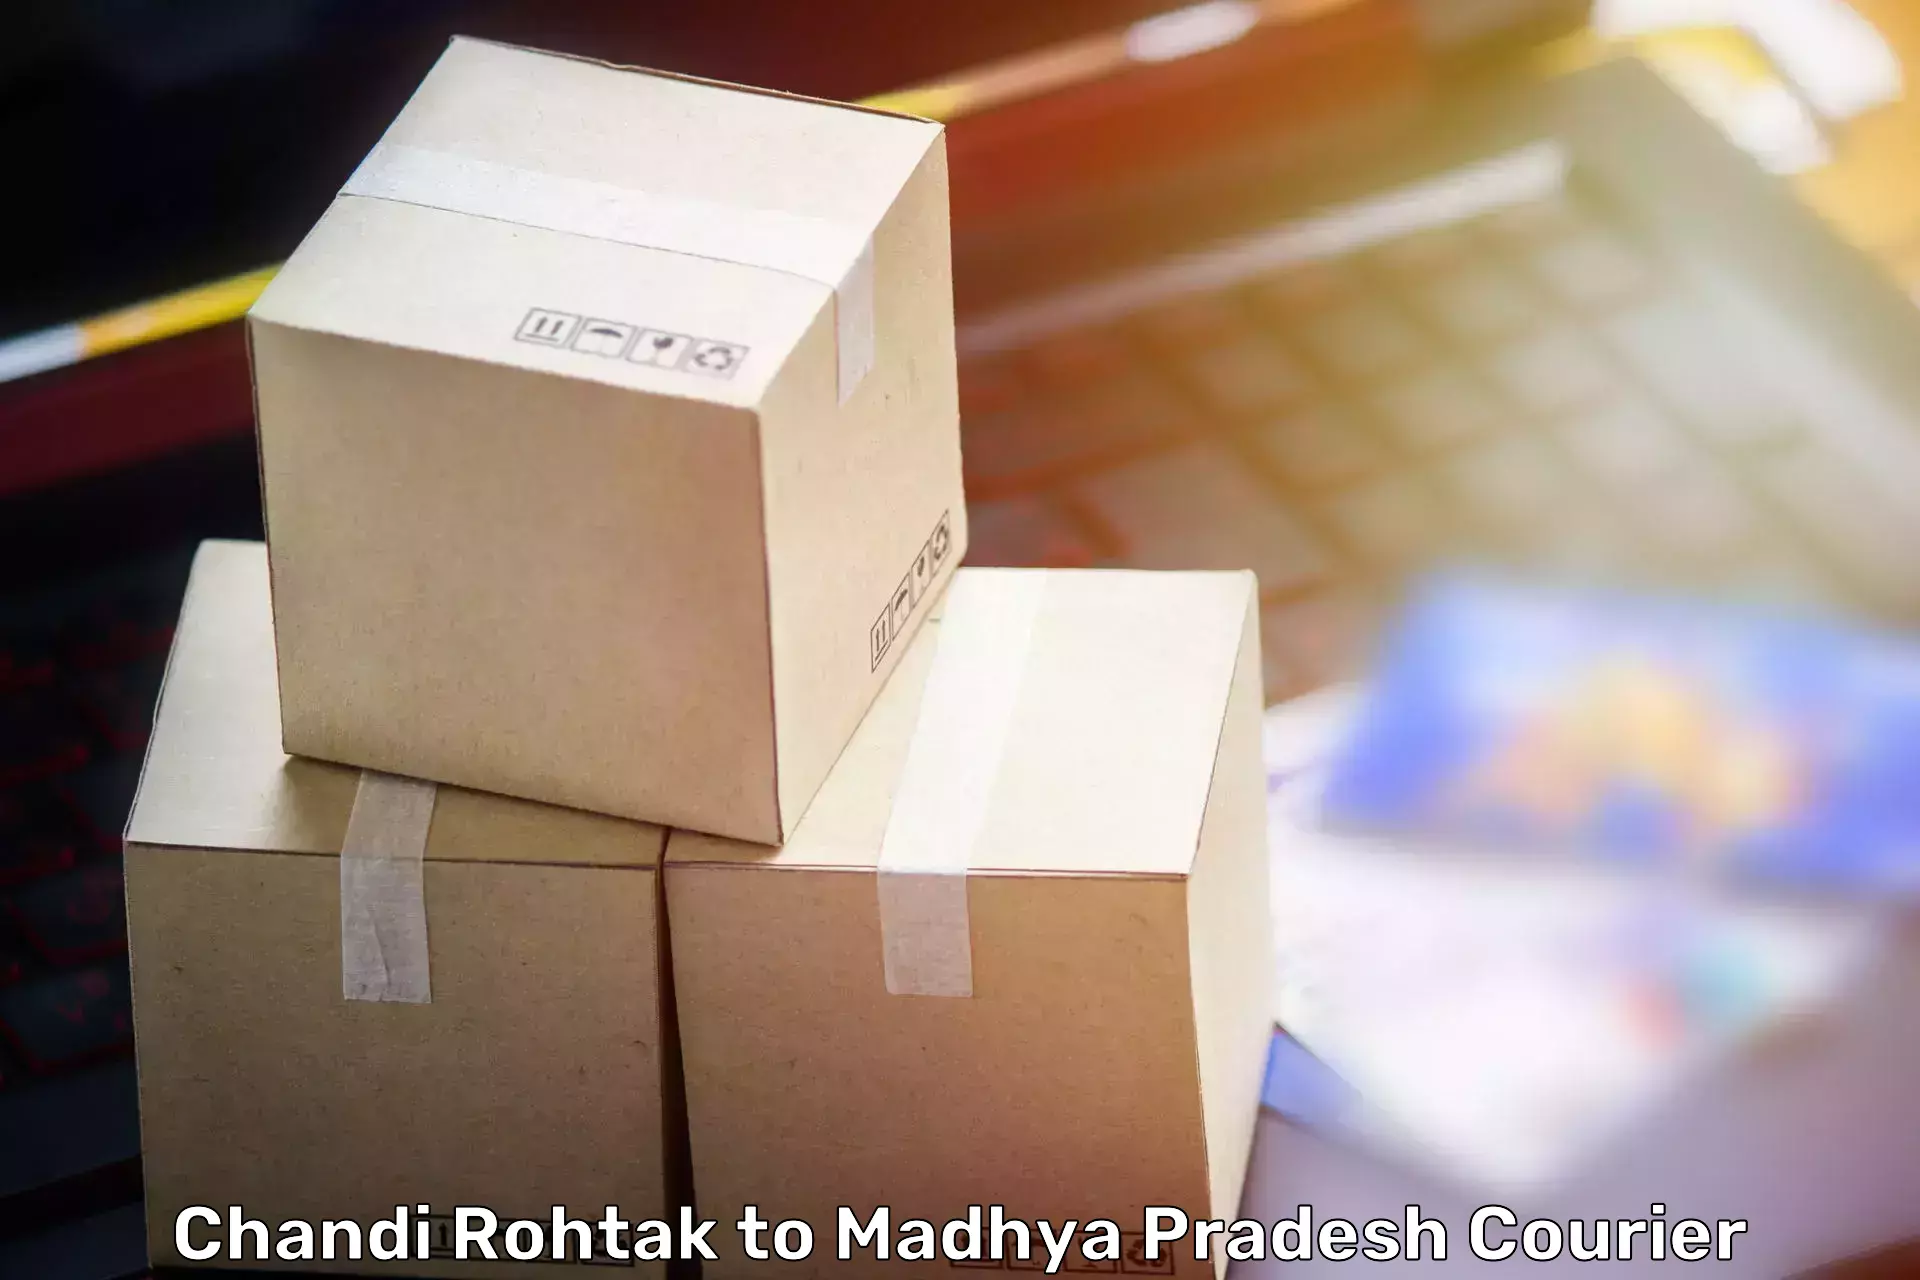 Personalized moving service Chandi Rohtak to Mungaoli